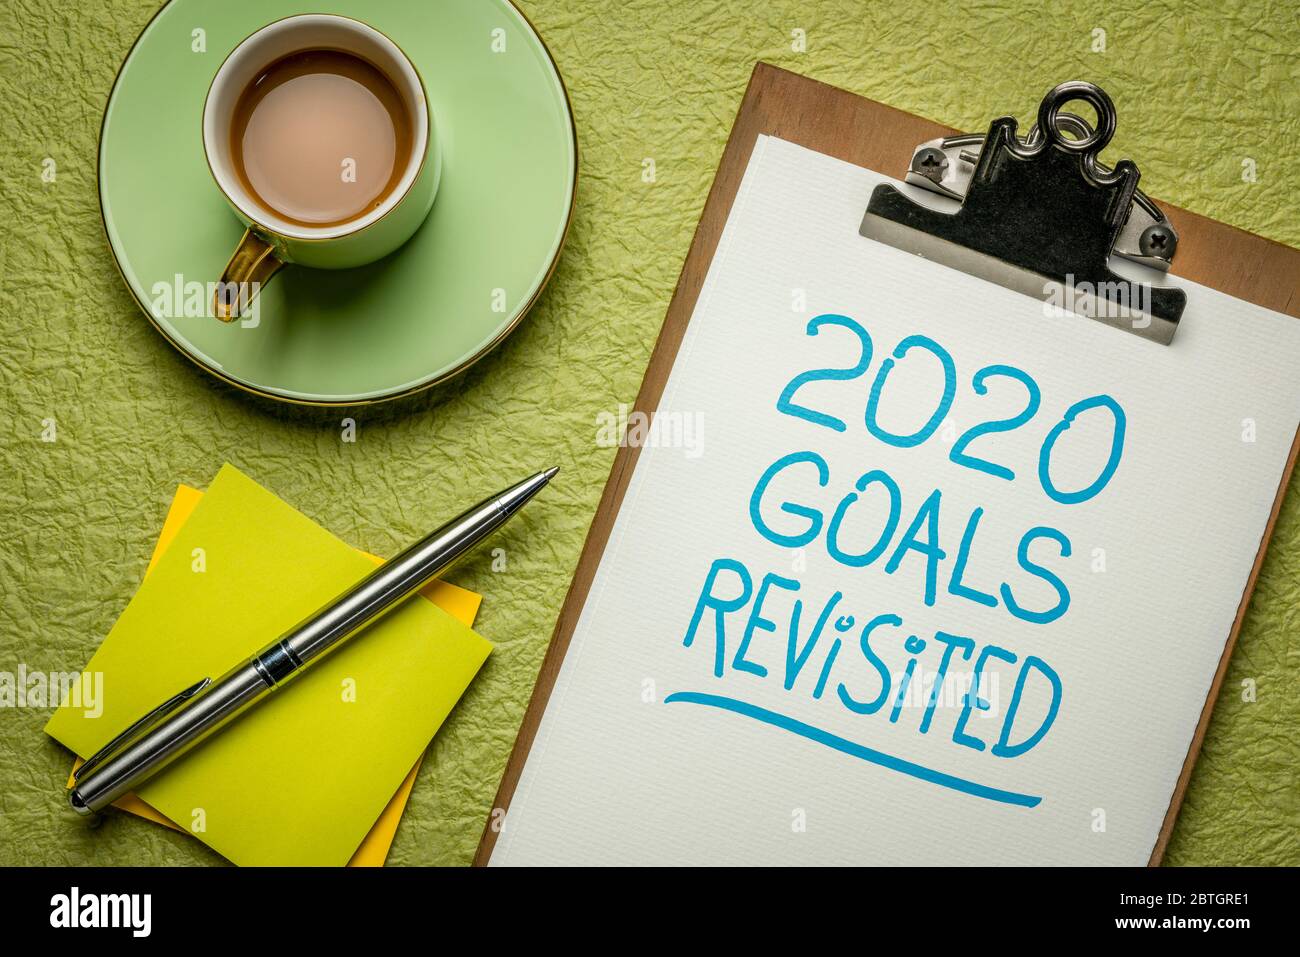 2020 obiettivi rivisitati - cambiamento di business e piani personali per la pandemia coronavirus e recessione economica, calligrafia in un clipboard con caffè Foto Stock